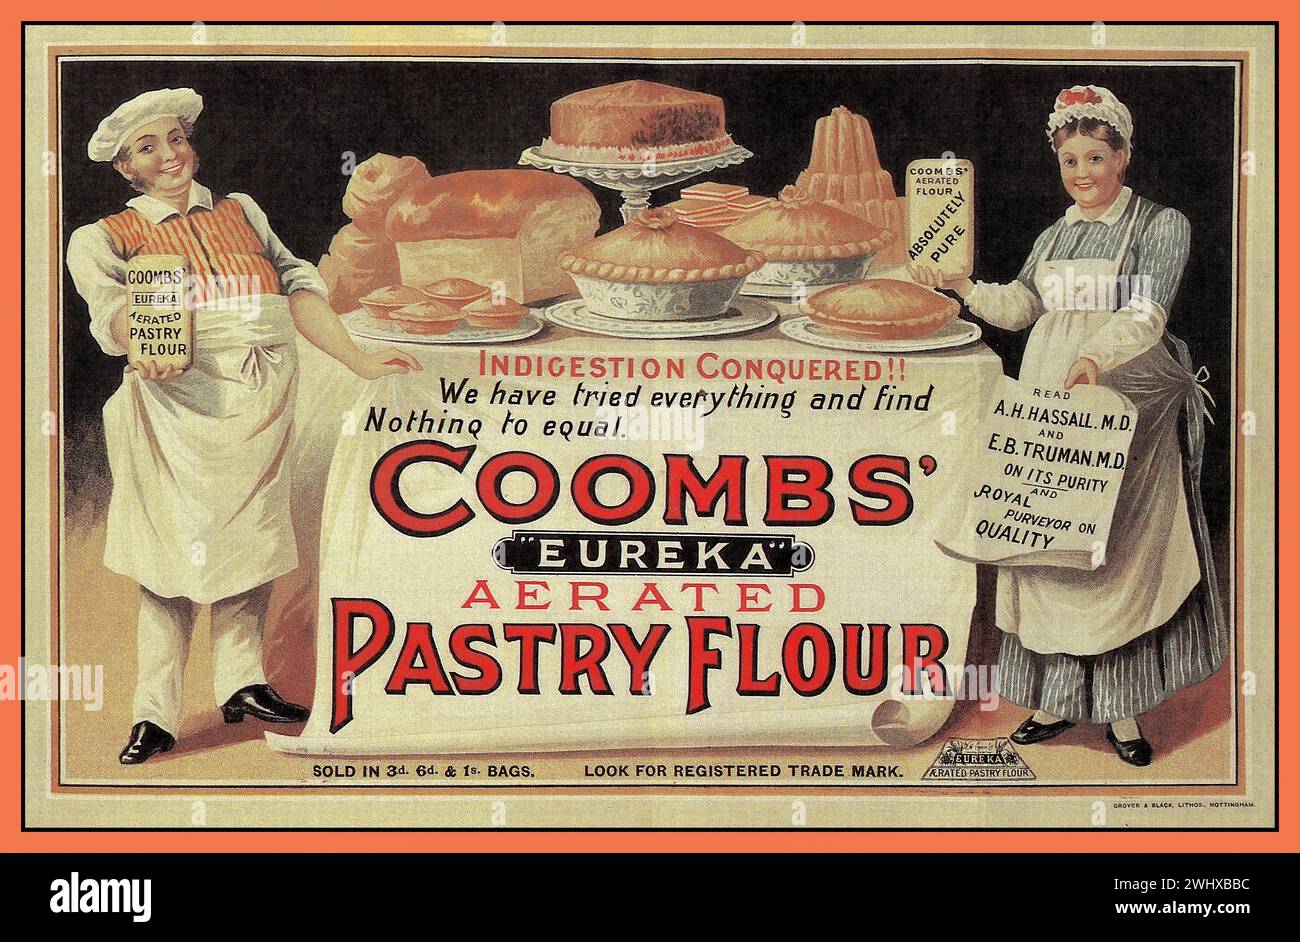 Vintage 1900er Jahre Gebäck Mehl Werbung Kochen Lebensmittel Zutaten Illustration von COOMBS Eureka mit belüftetem Gebäck Mehl. Großbritannien gedruckt in Nottingham. Stockfoto